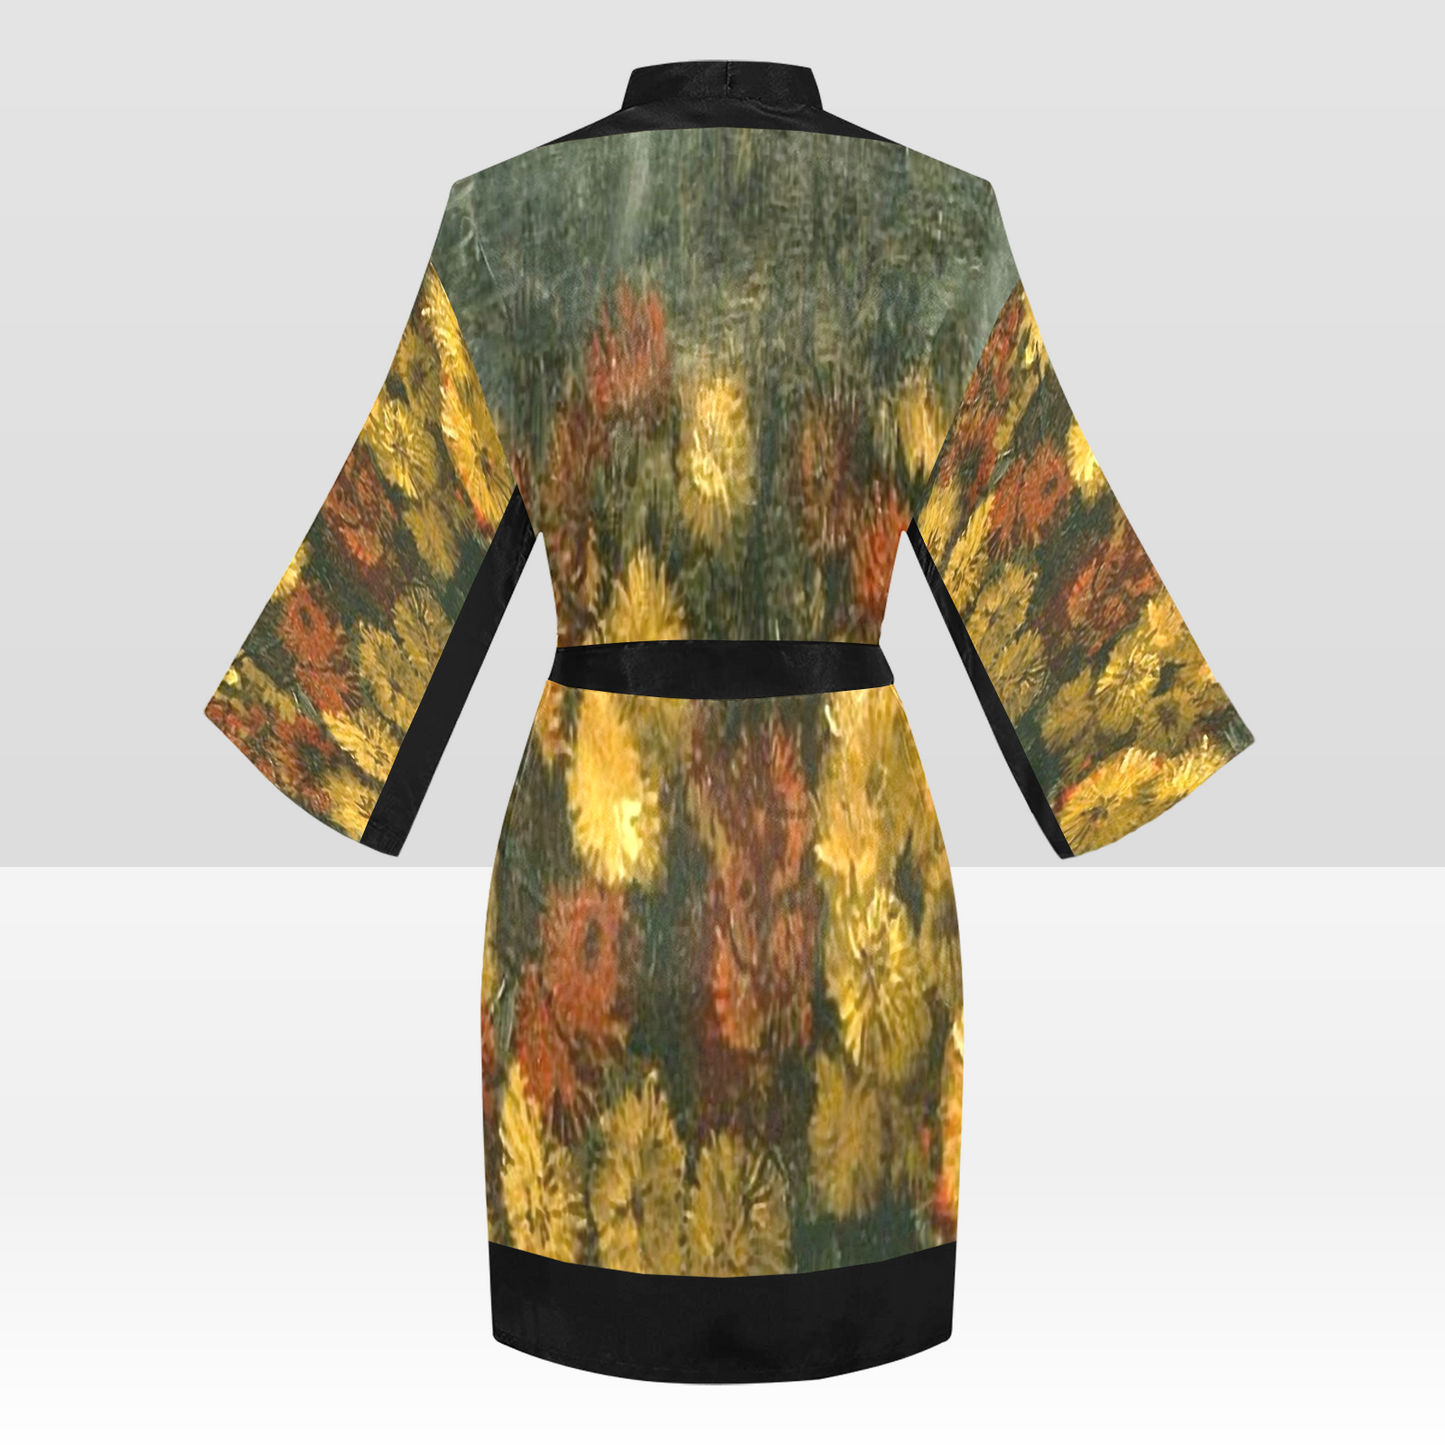 Vintage Floral Kimono Robe, Black or White Trim, Sizes XS to 2XL, Design 28